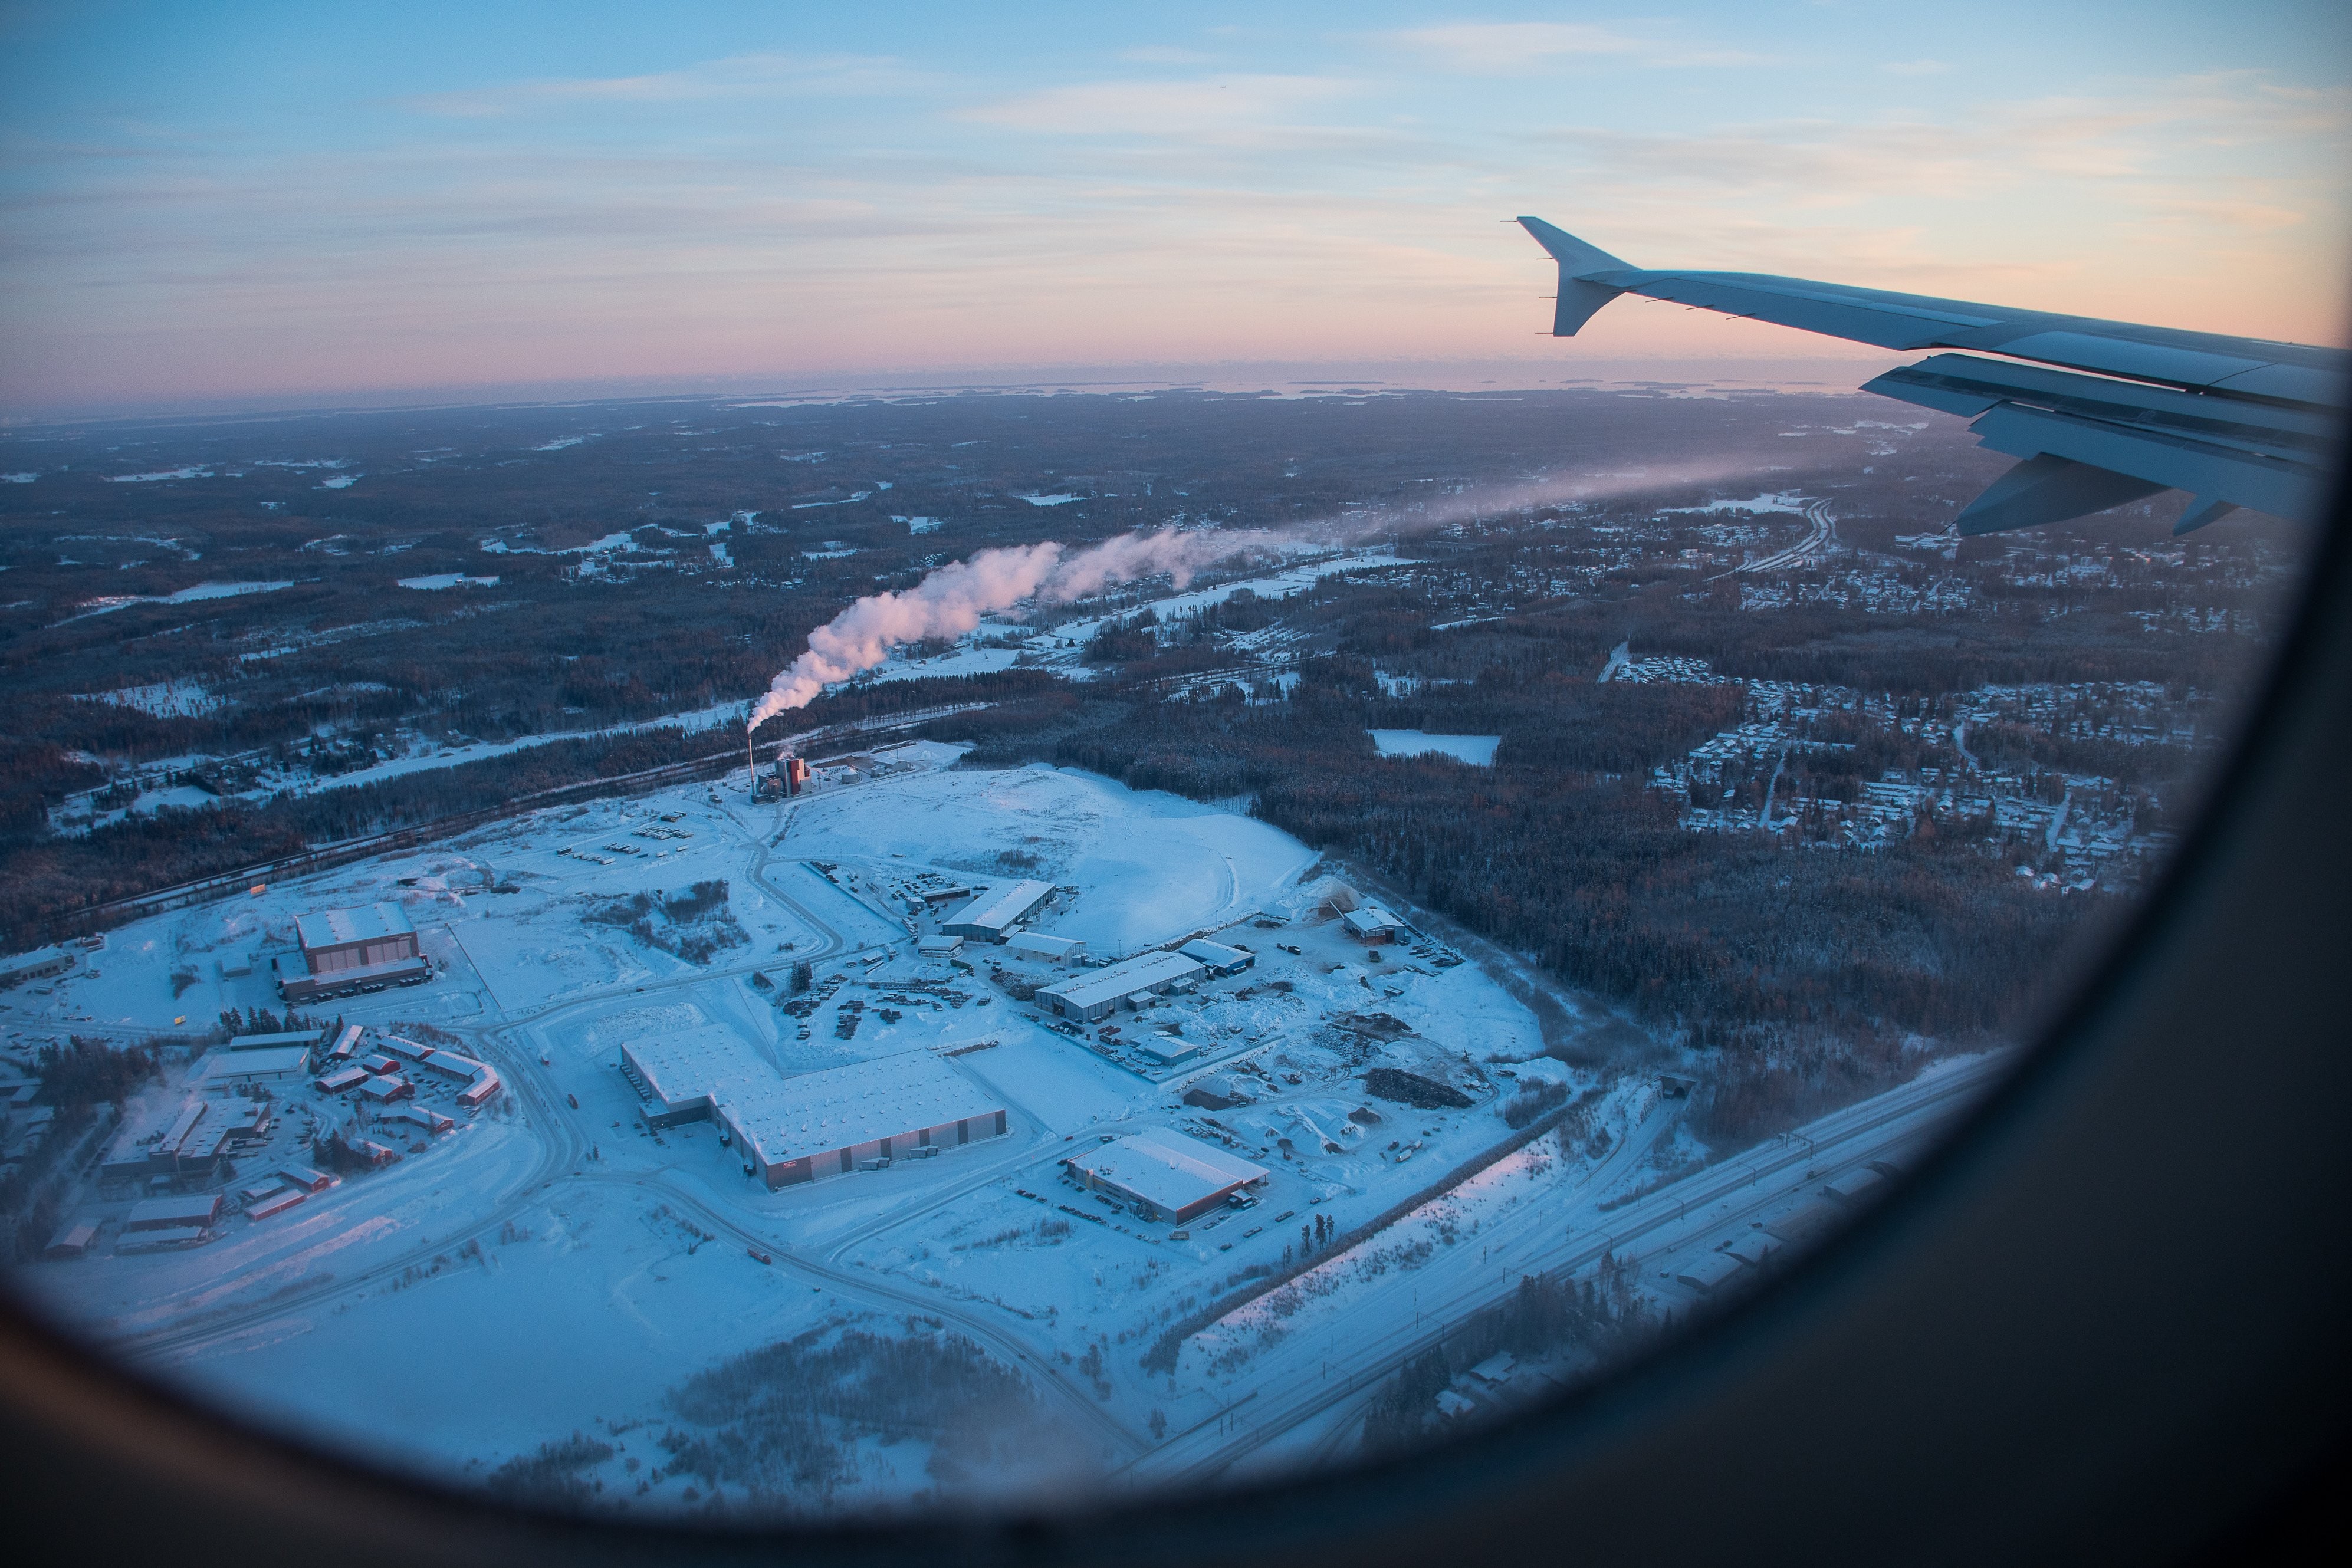 飛行機の窓の写真からの冬のシーン